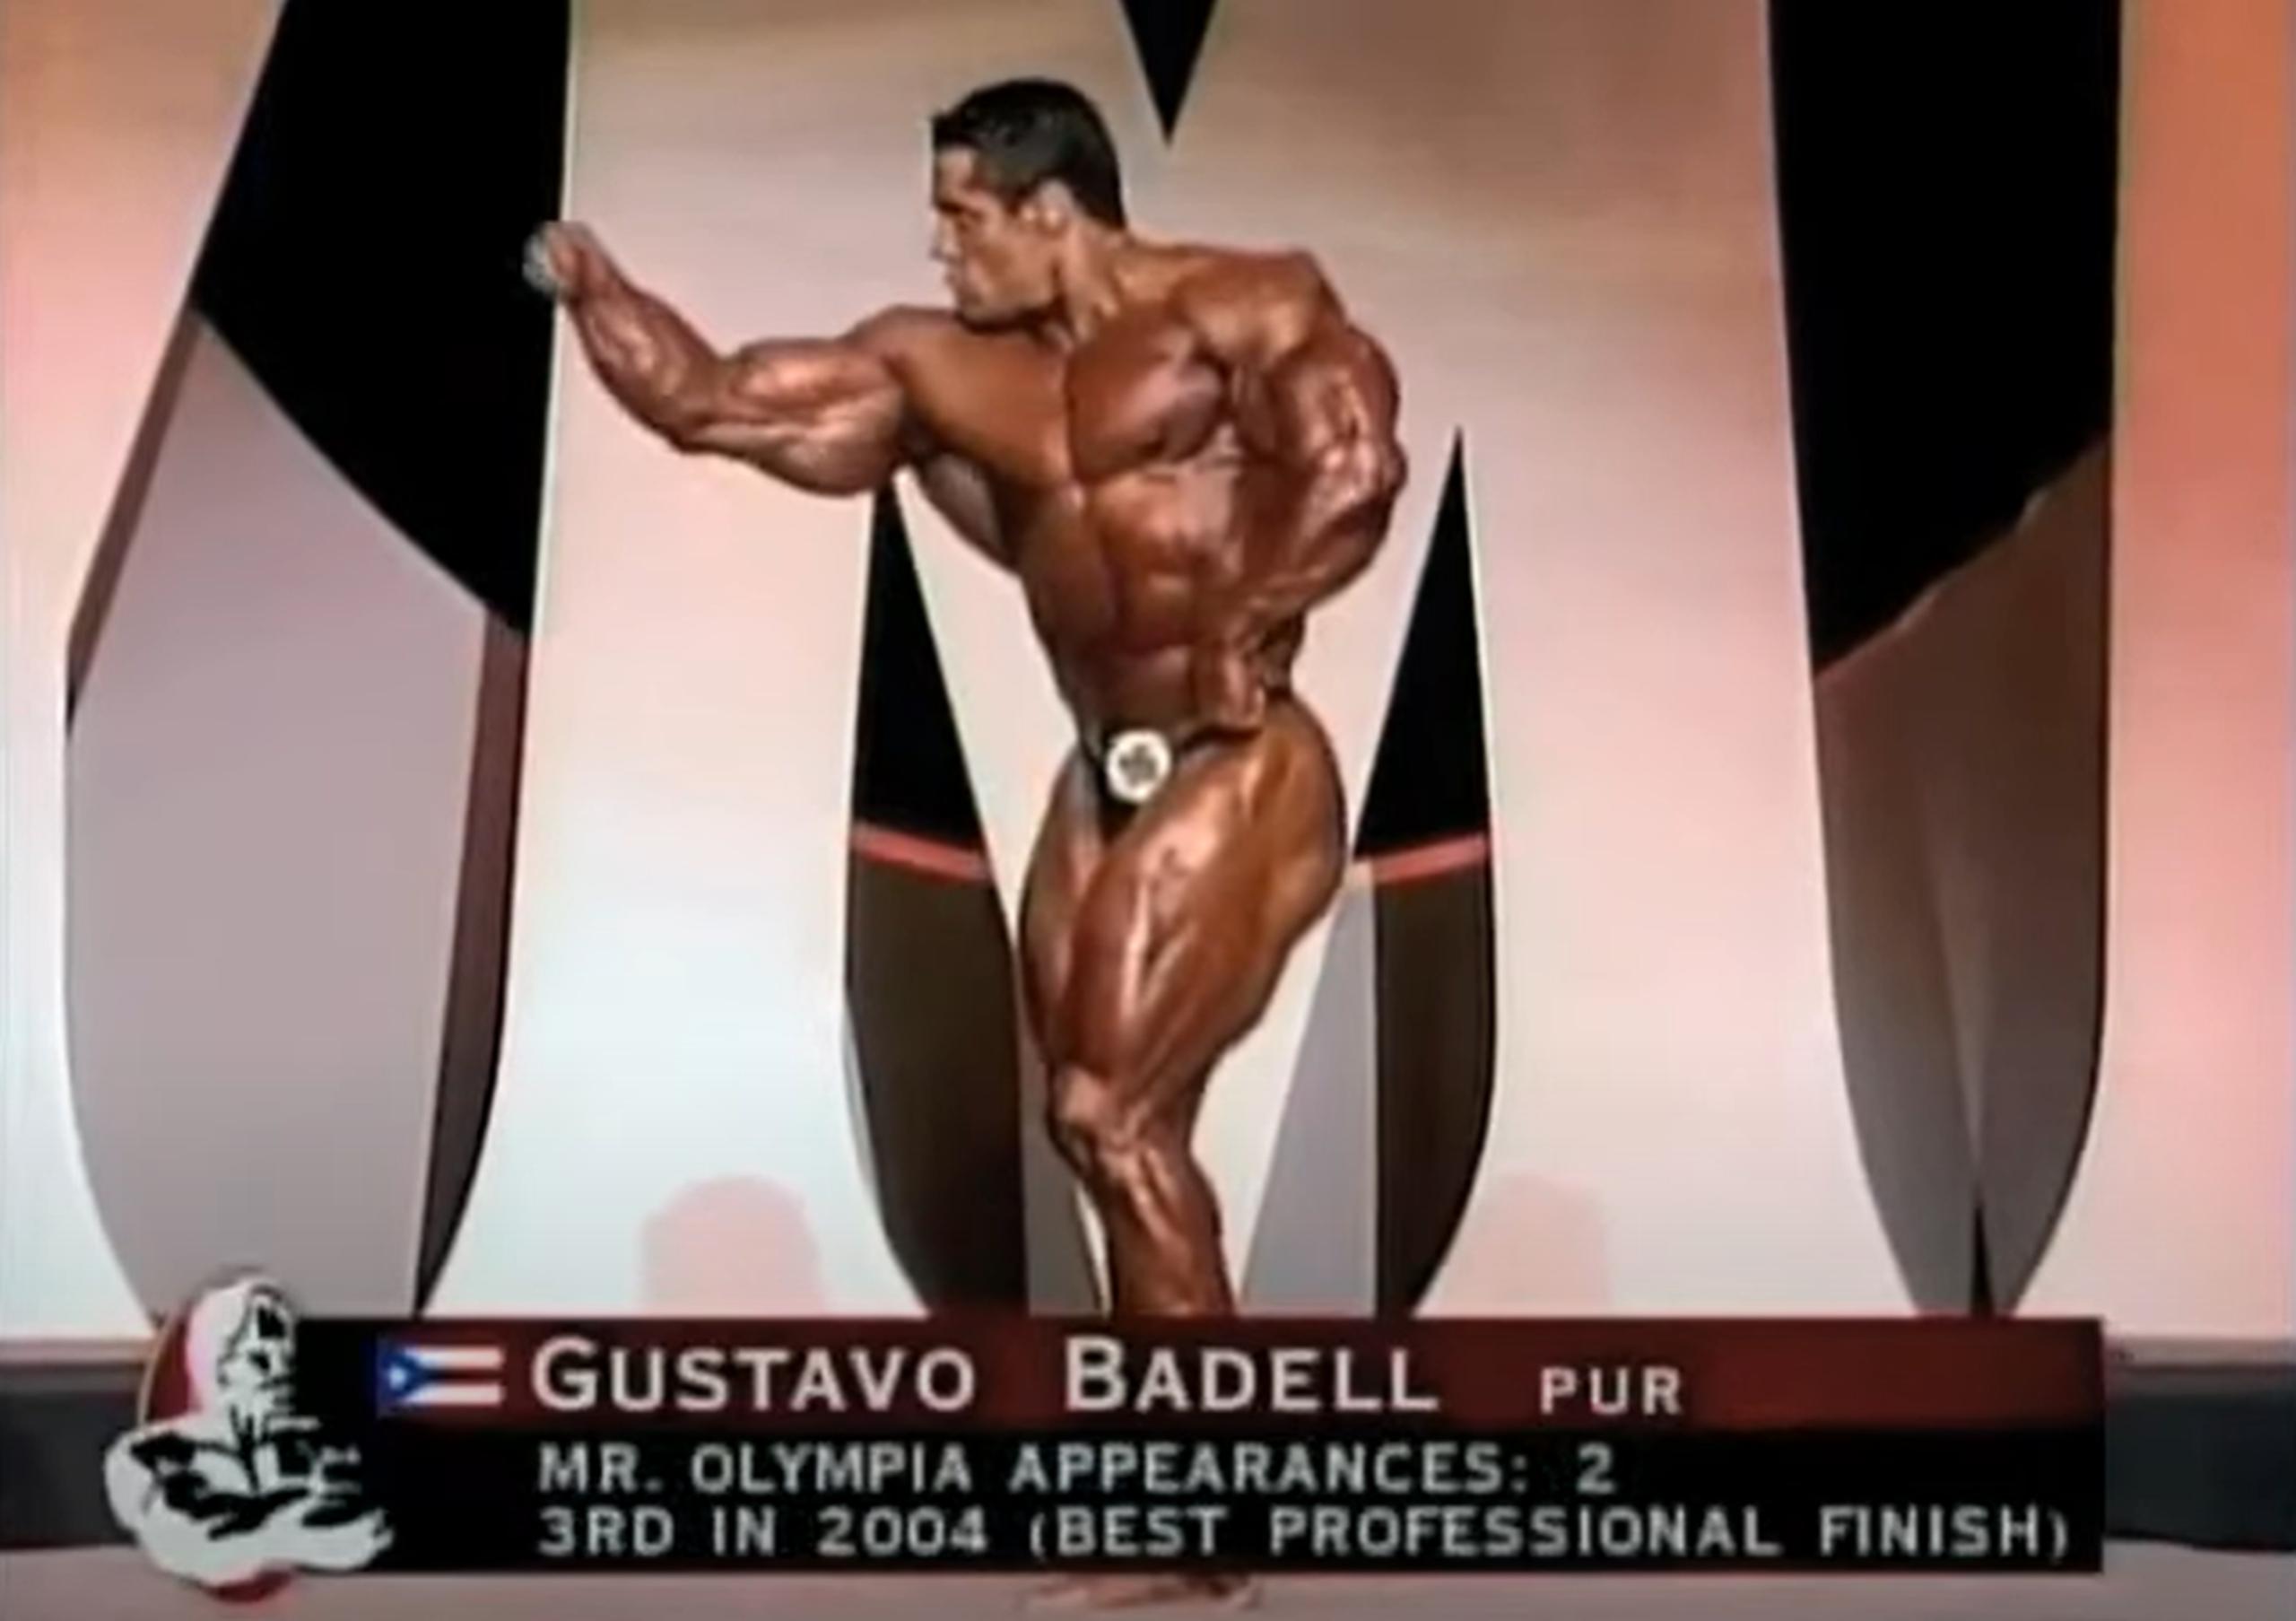 En el 2005 Gustavo Badell logró el tercer lugar en la competencia Mr. Olympia.